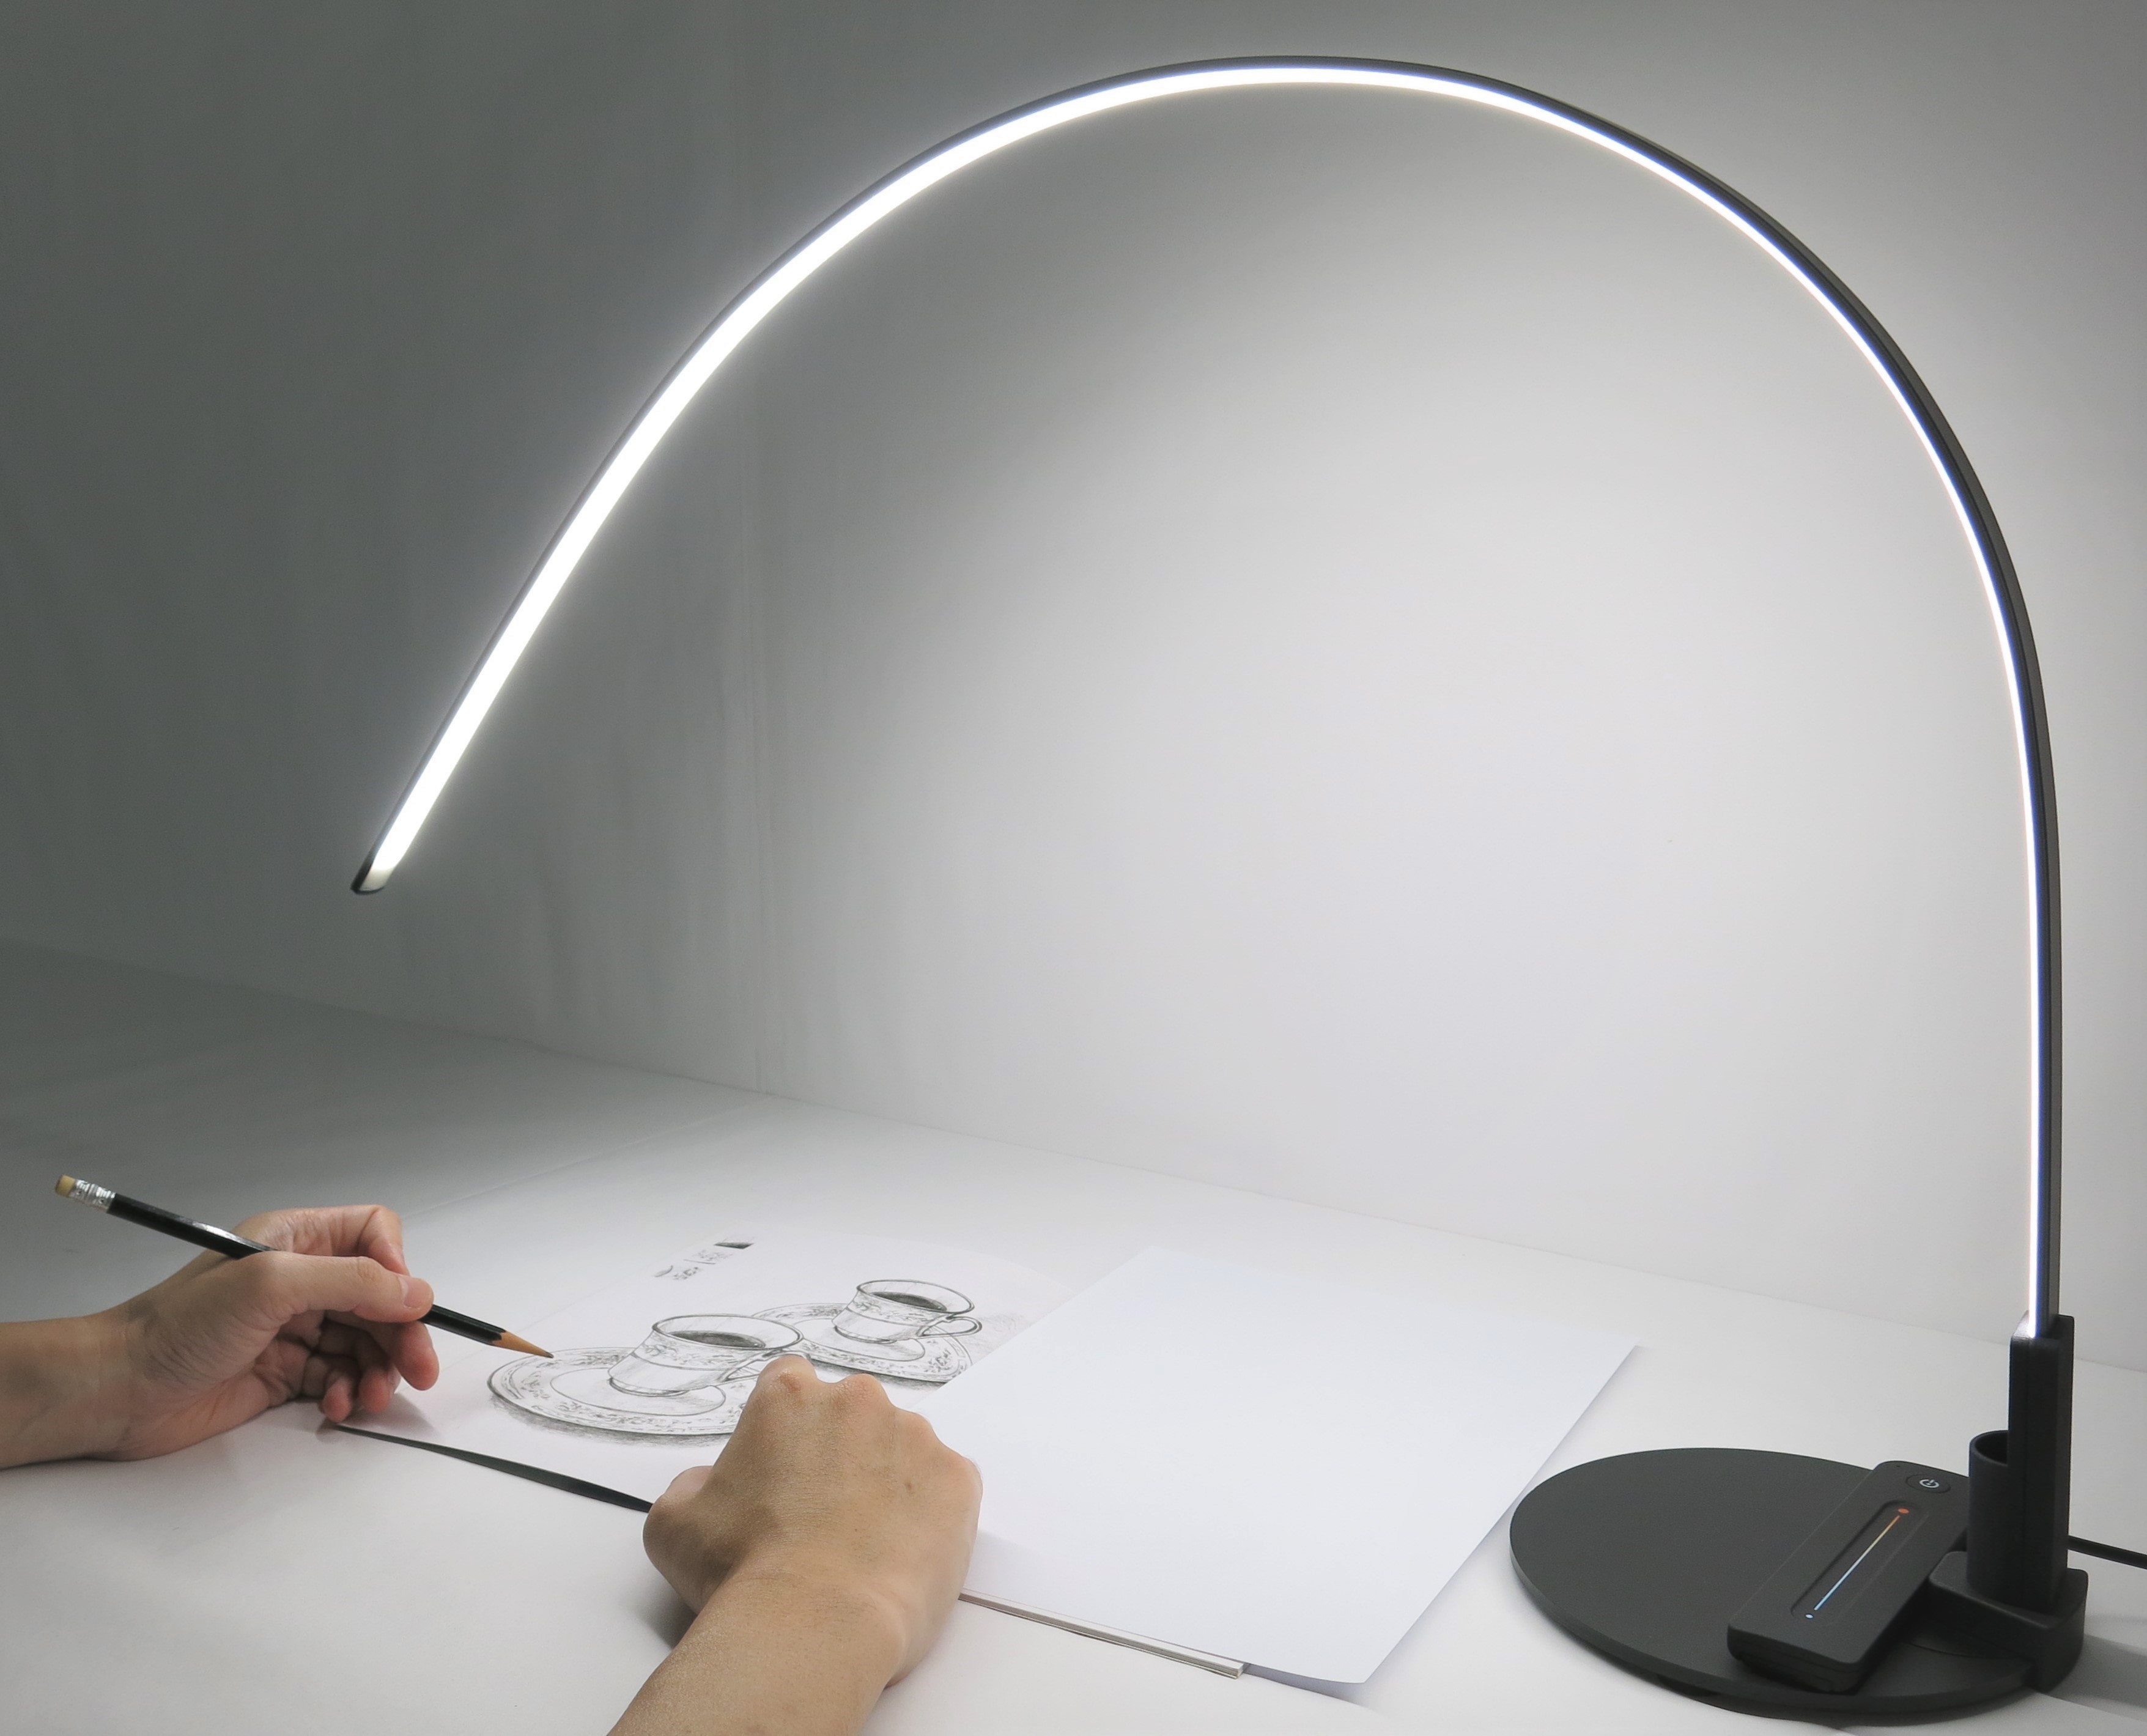 ArchFlex Mini multi-purpose LED task light